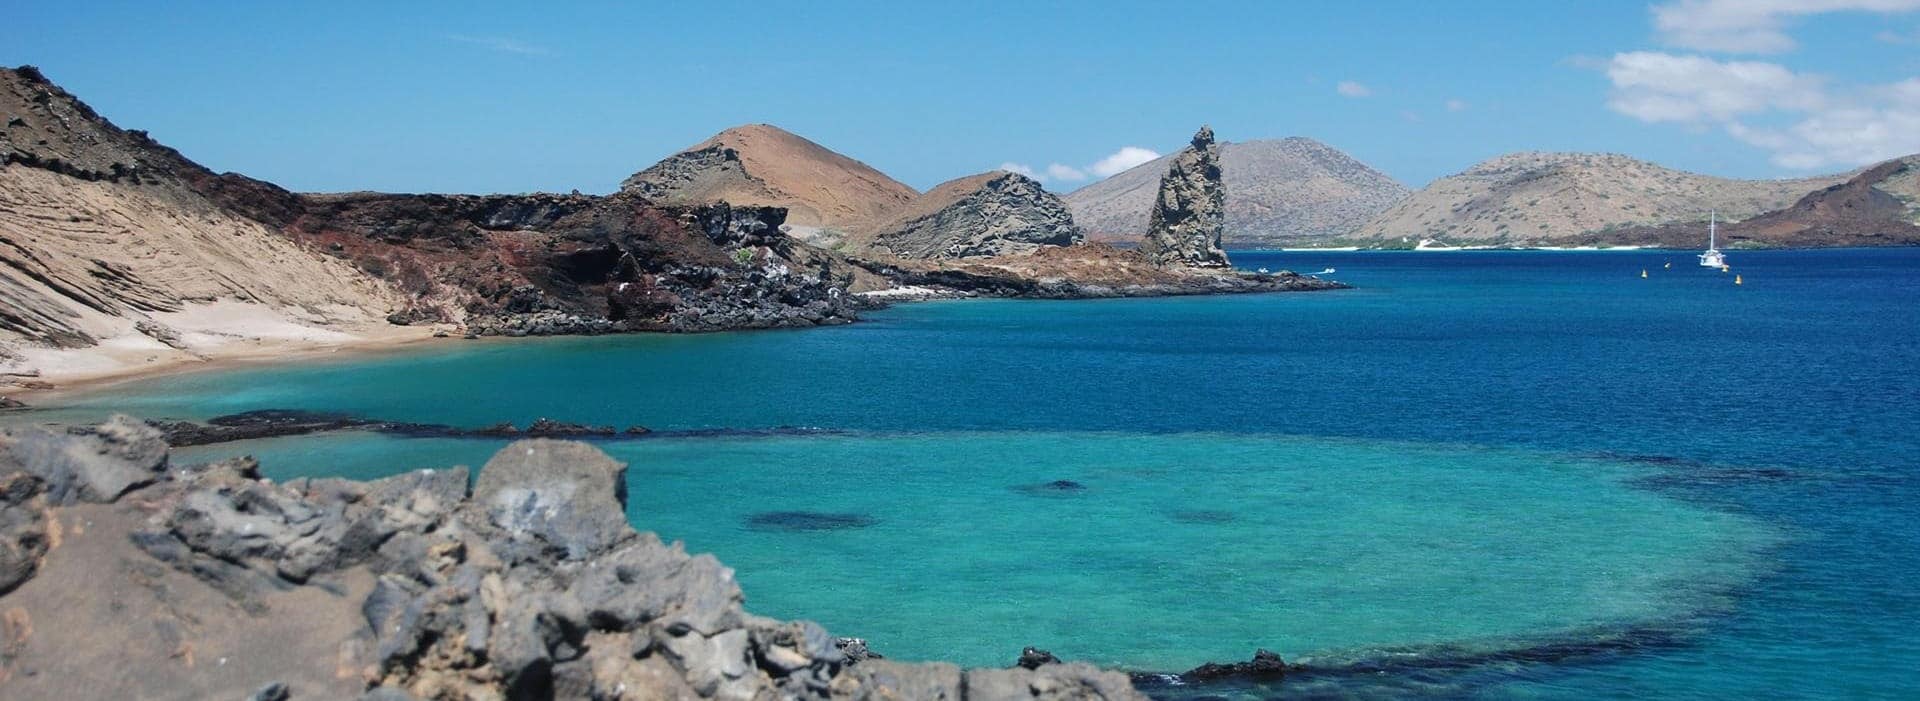 Les îles Galapagos en péril, Halte au tourisme de masse!